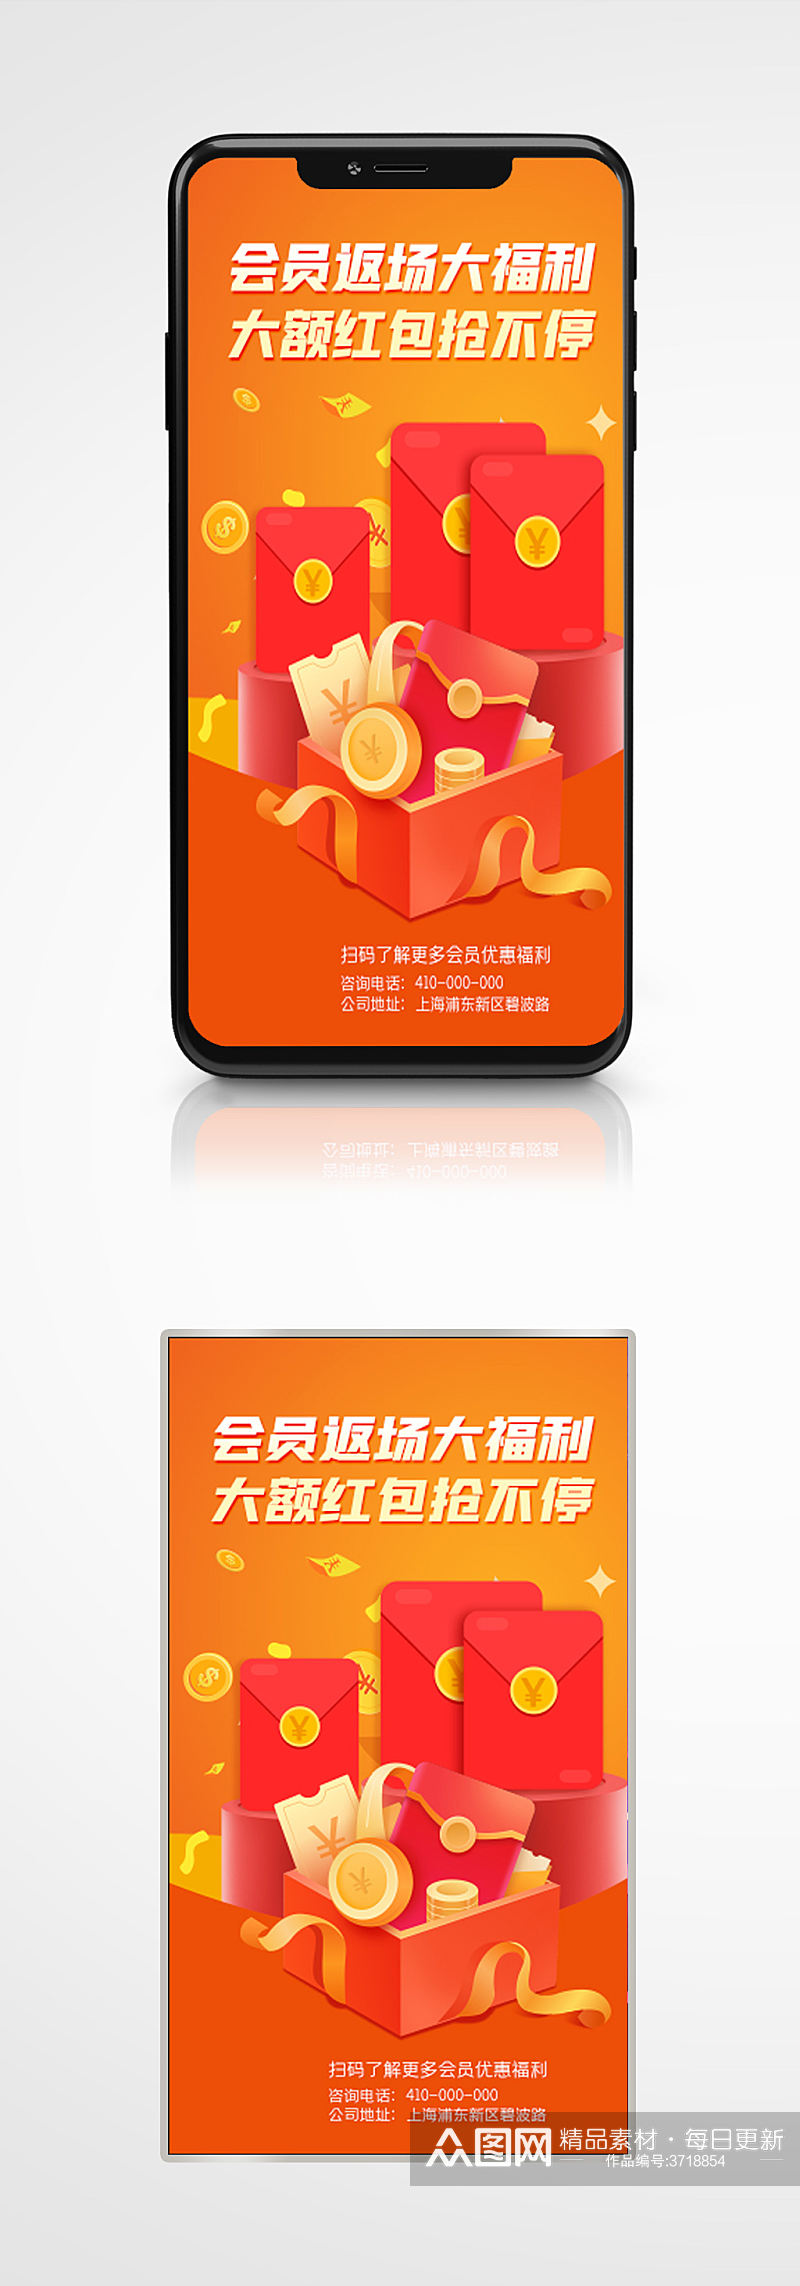 红包福利促销手机海报优惠券活动素材